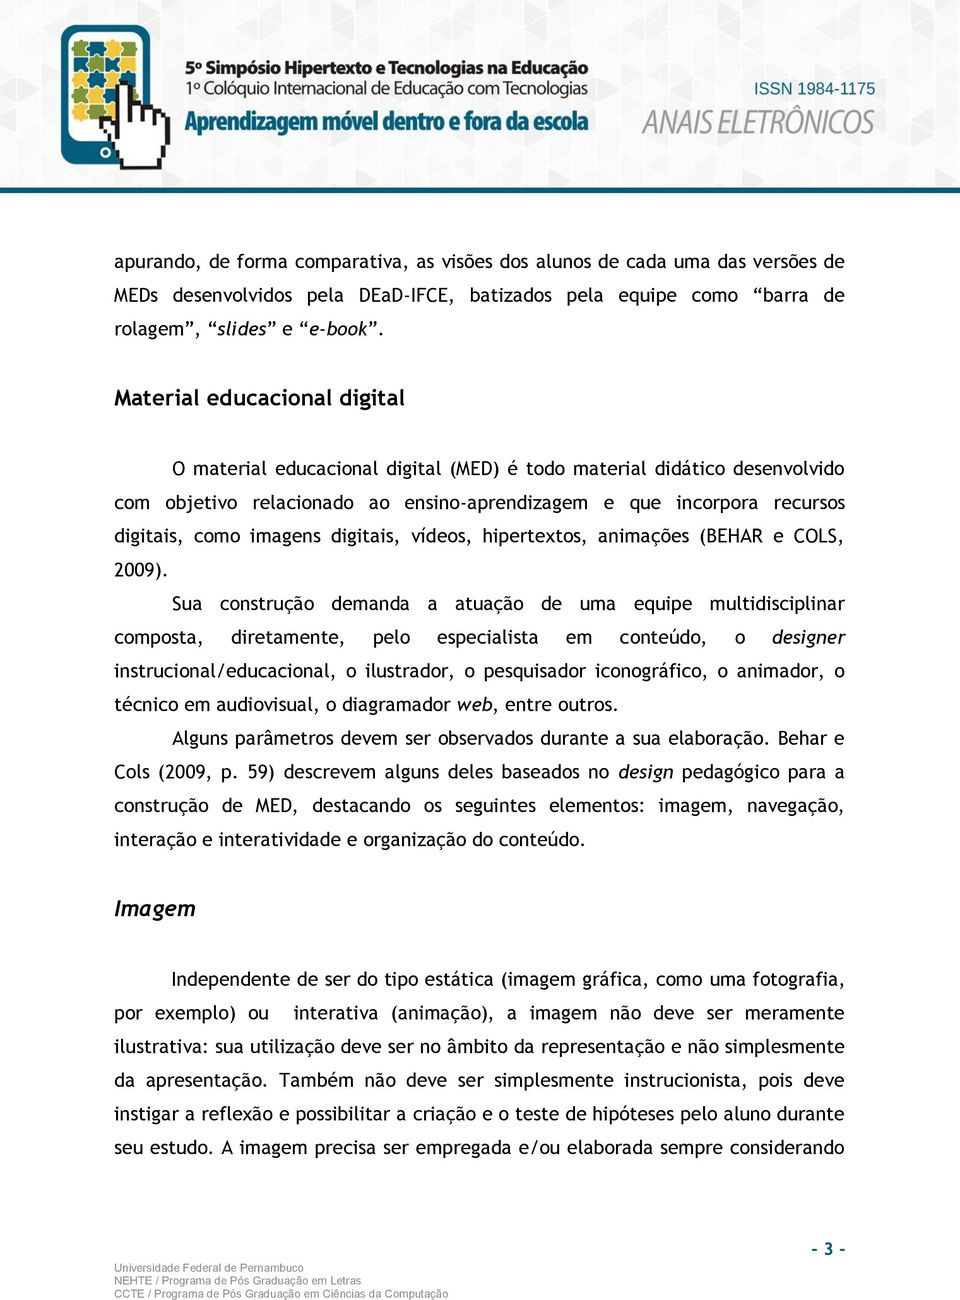 digitais, vídeos, hipertextos, animações (BEHAR e COLS, 2009).